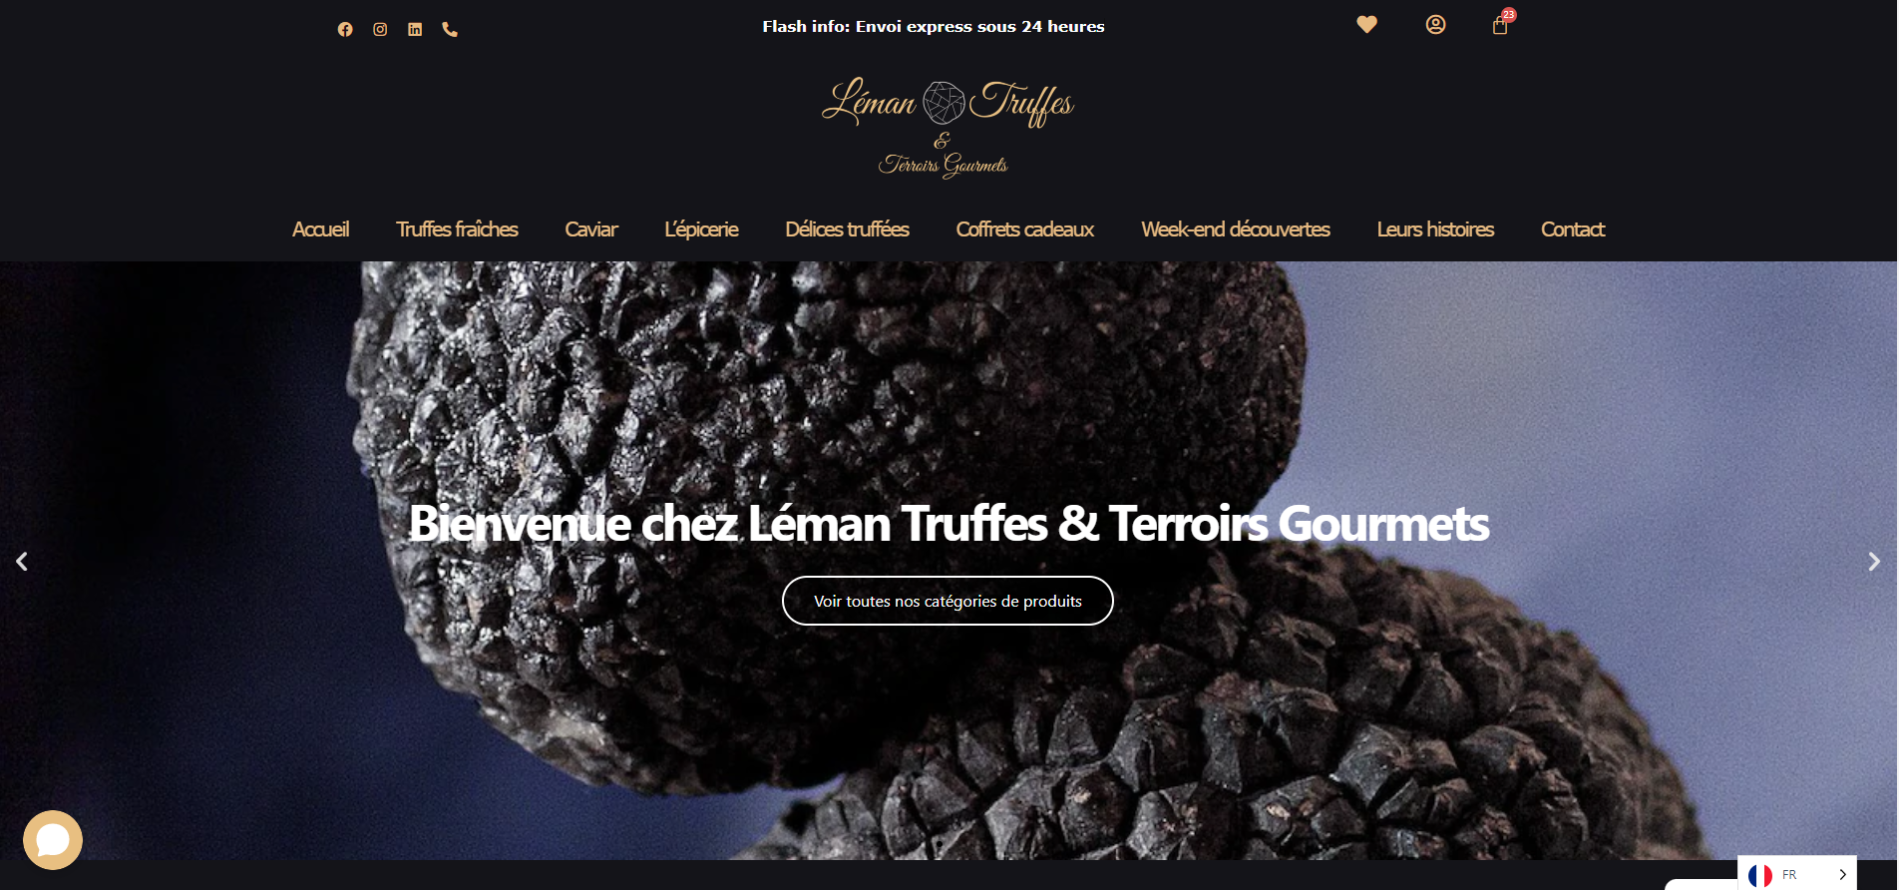 Voici une image d'un site e-commerce de truffes fraîches